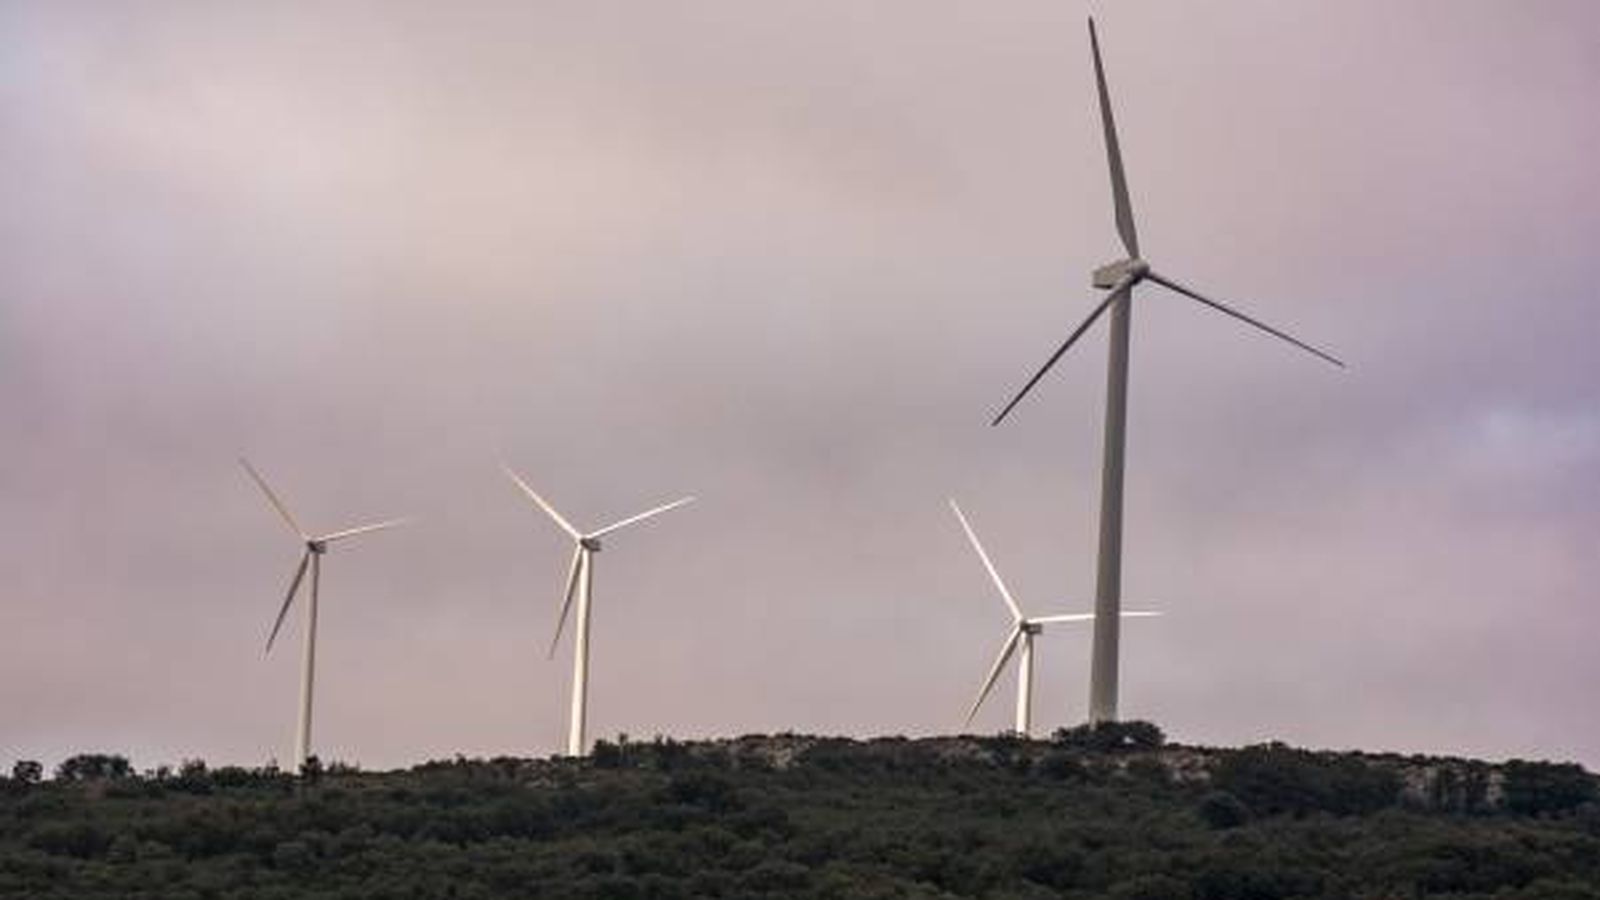 Los molinos de viento desatan la polémica en pueblos de Aragón